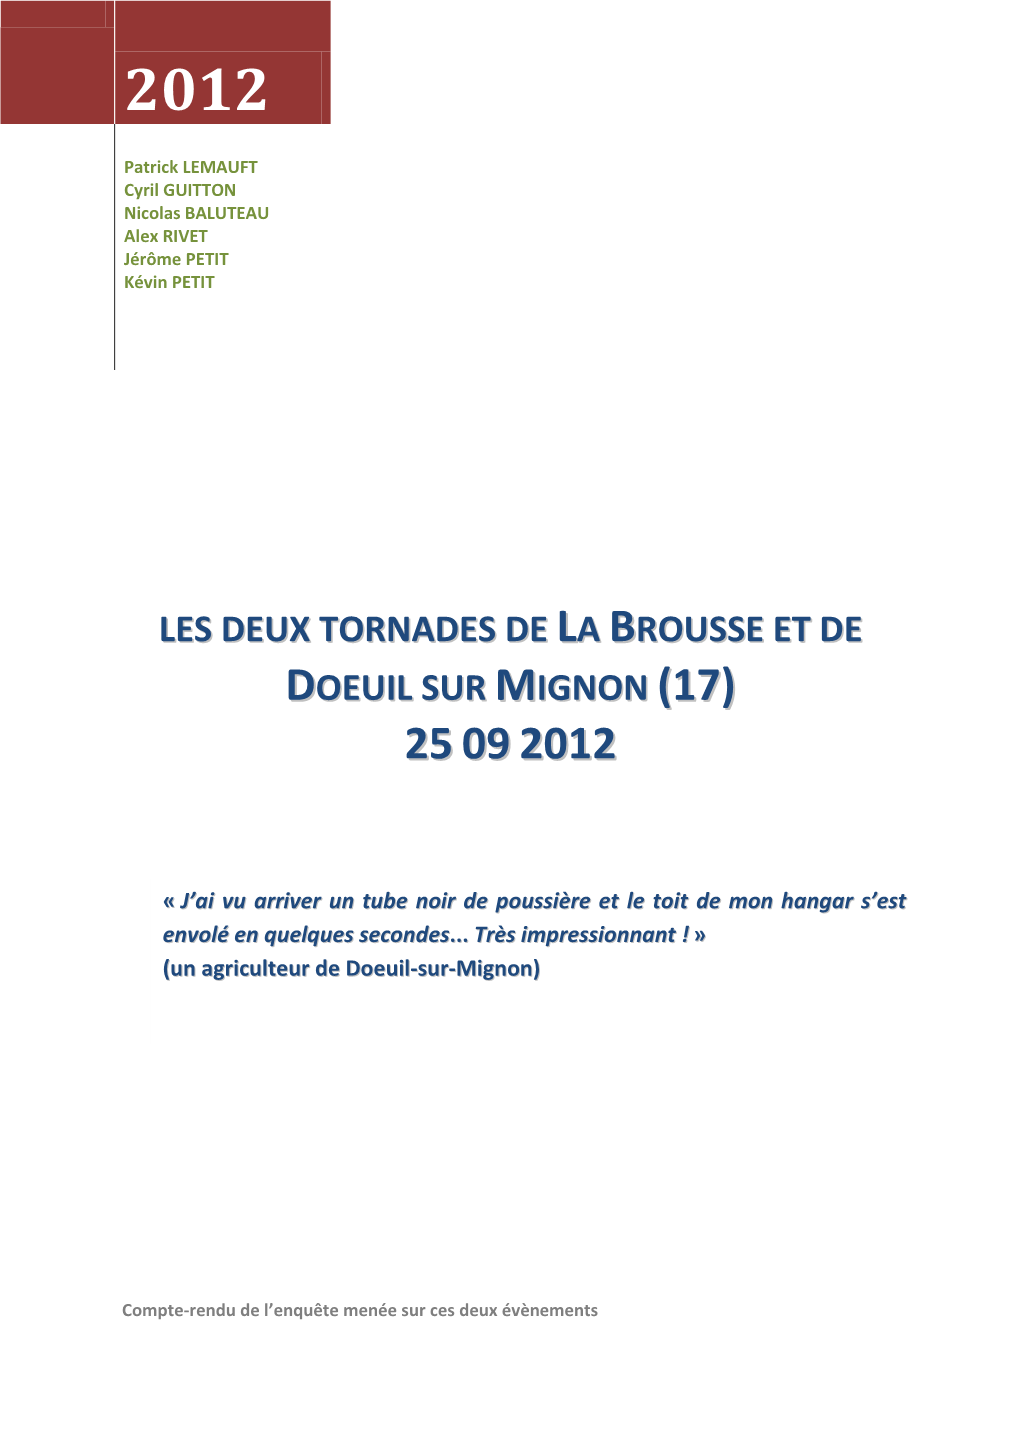 Les Deux Tornades De La Brousse Et De Doeuil Sur Mignon (17) 25 09 2012